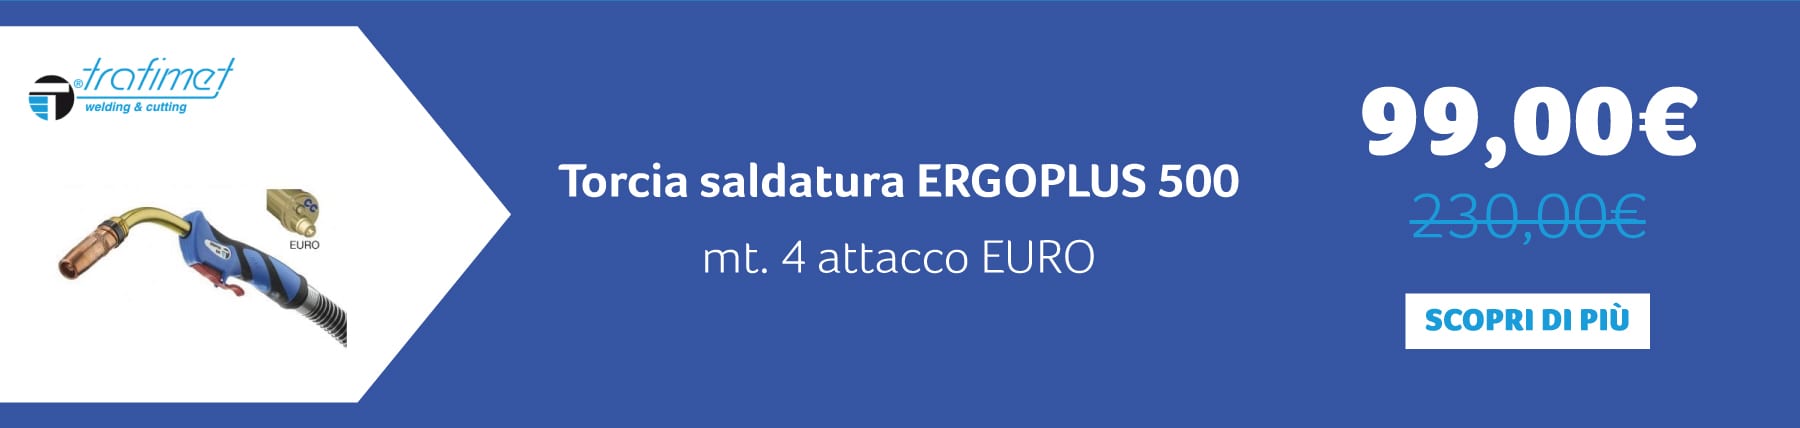 TRAFIMET – Torcia saldatura ERGOPLUS 500, mt. 4 attacco EURO